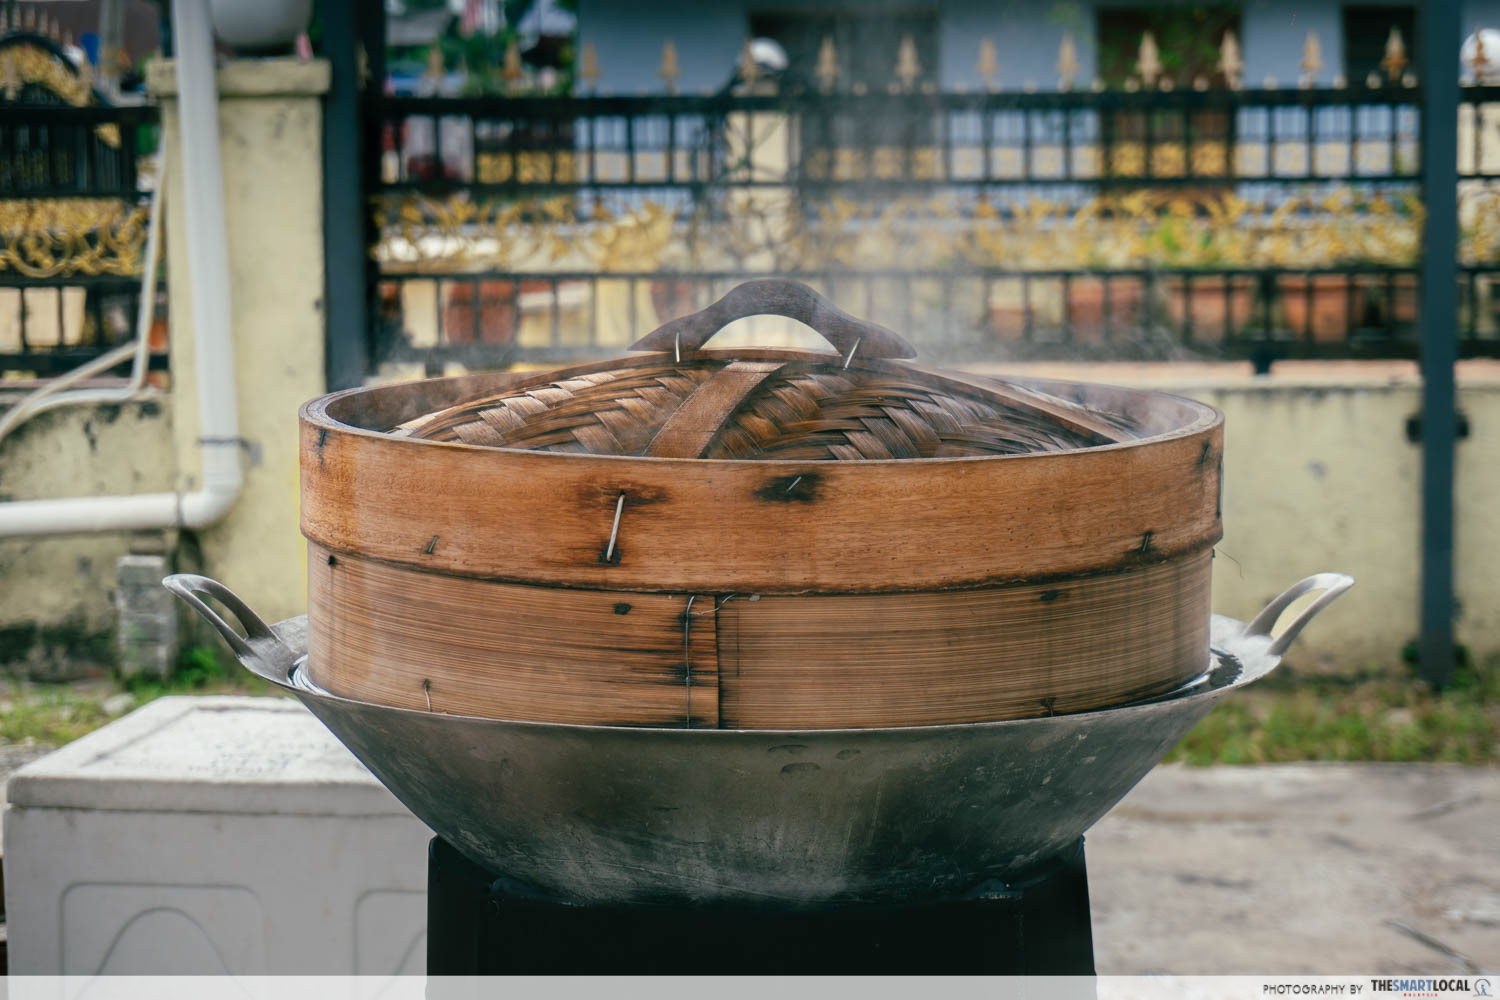 Roti Kapas - bamboo steamer